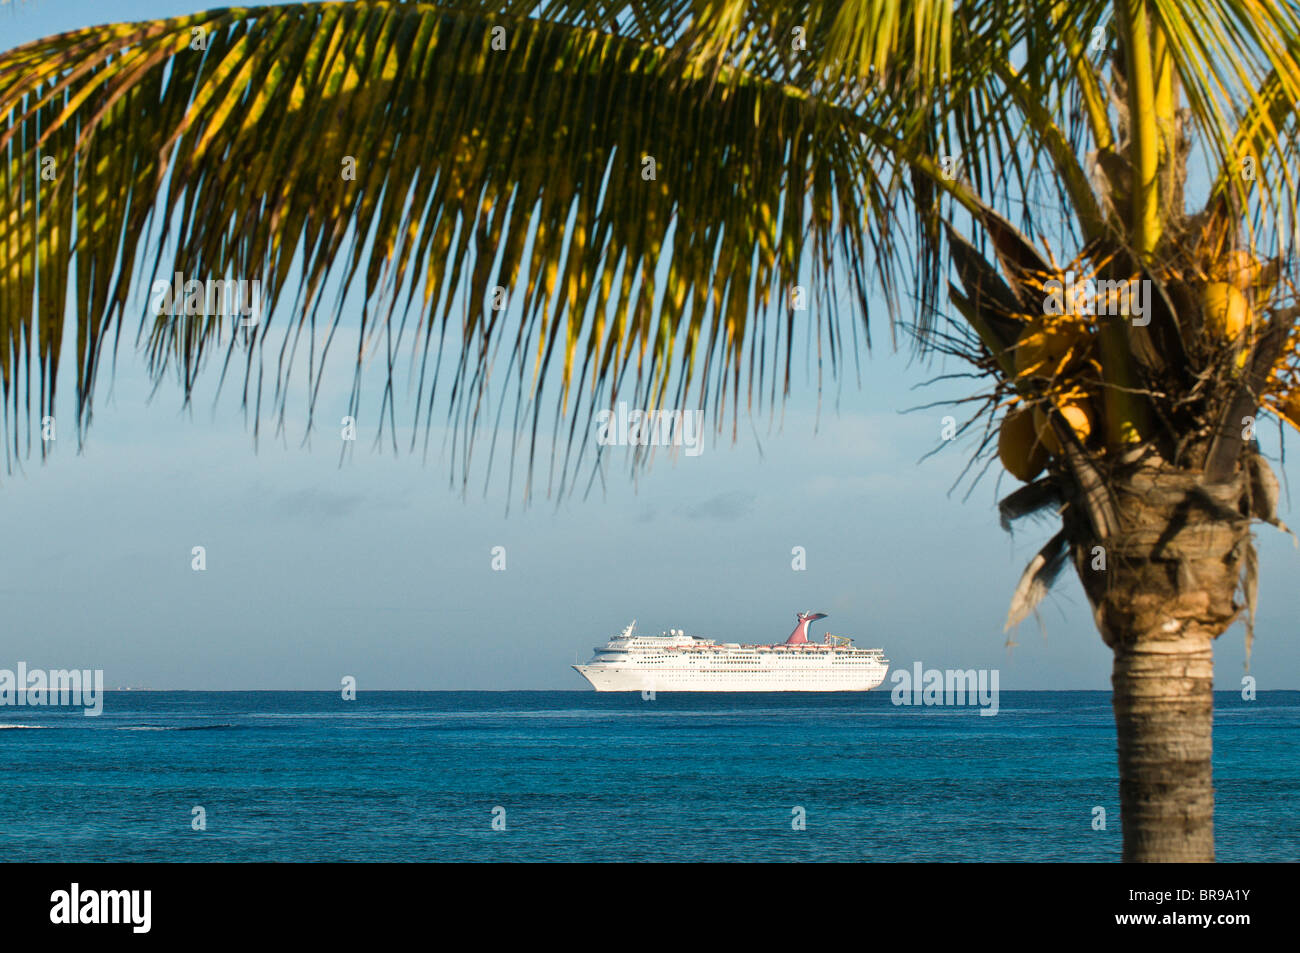 Mexico, Cozumel. Cruise ship, San Miguel, Isla Cozumel, Cozumel Island. Stock Photo